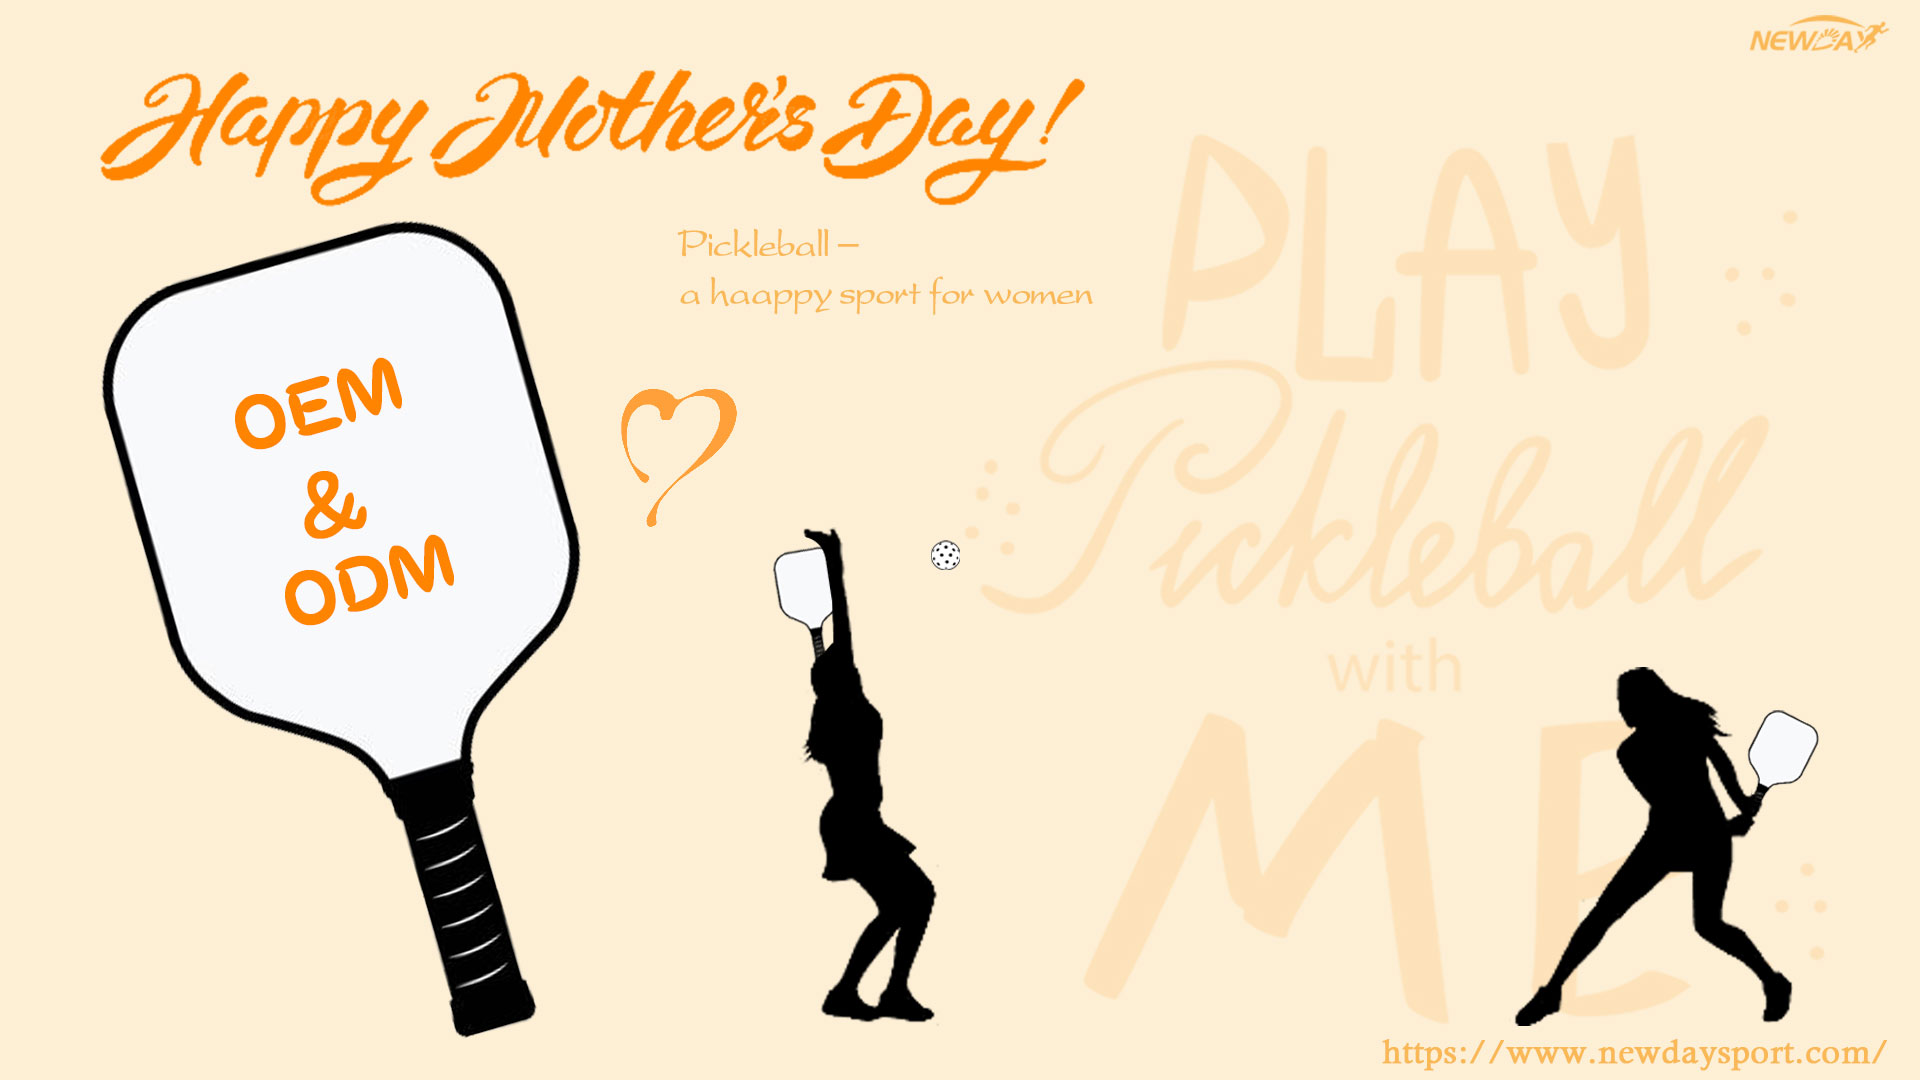 Presentes para o Dia das Mães: Mime a mamãe com todos os tipos de raquete de pickleball